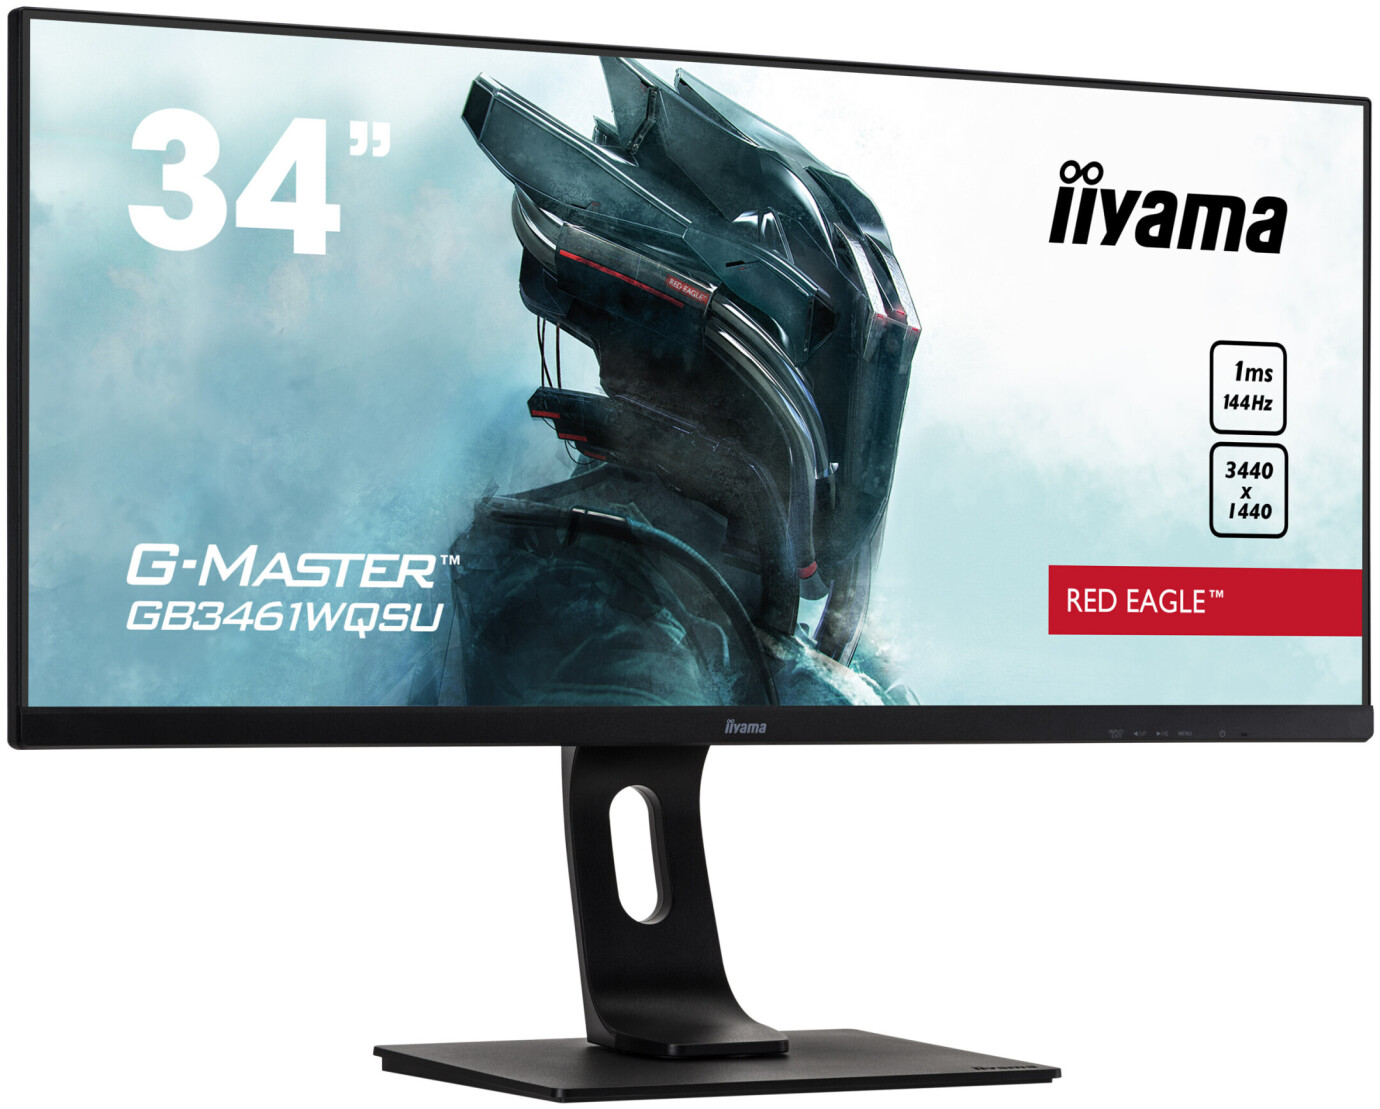 iiyama G-Master GB3461WQSU-B1 34'' Gamingmonitor mit UWQHD Auflösung